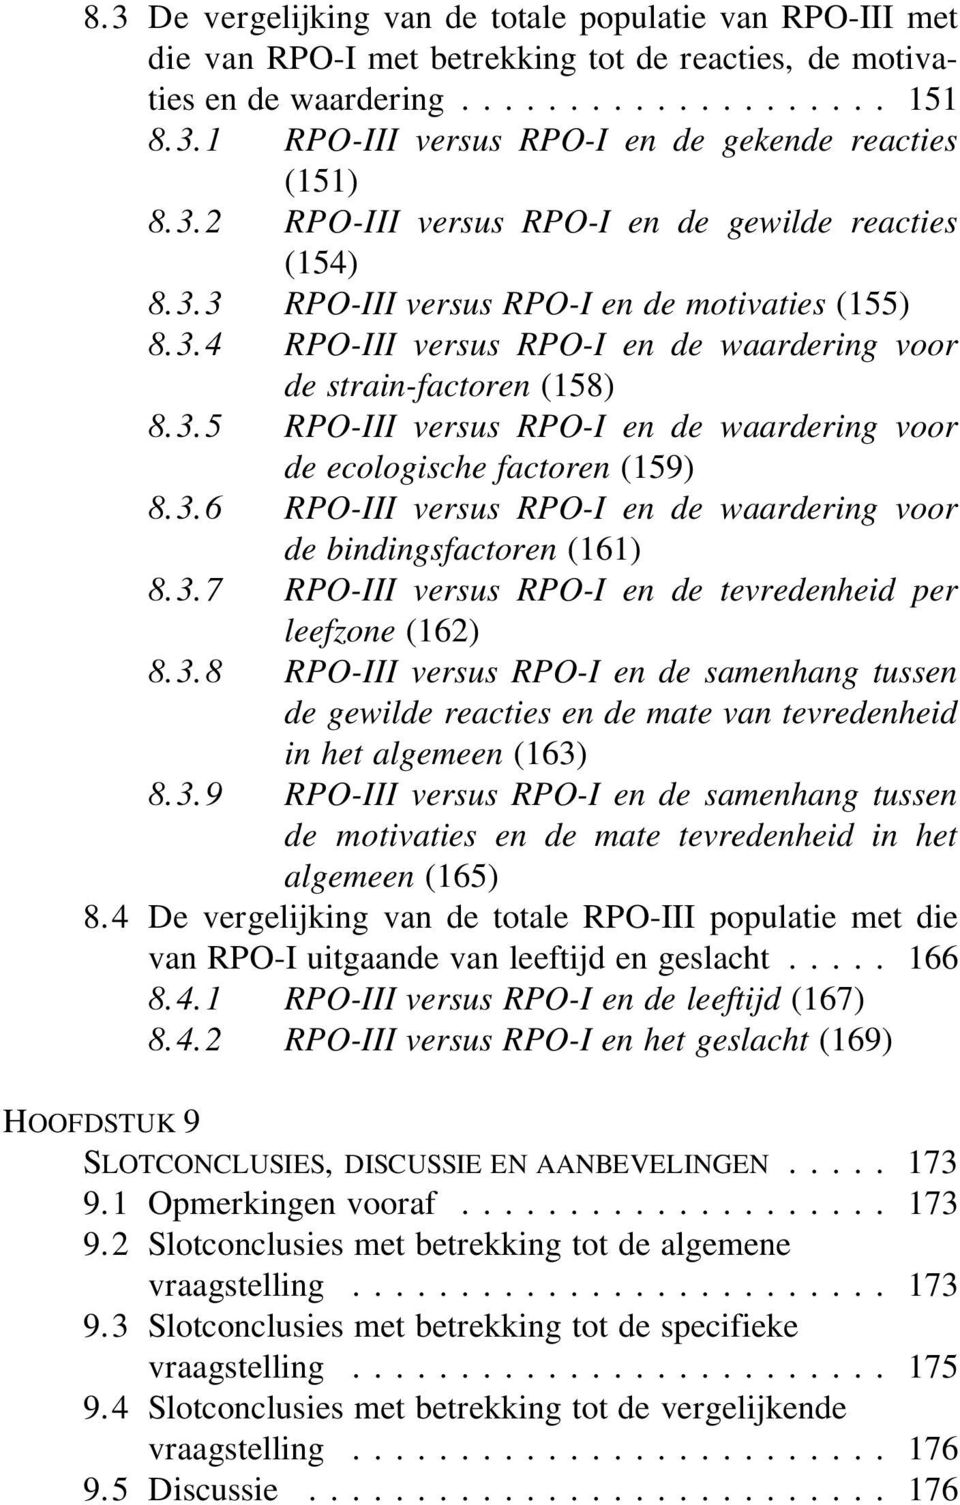 3.6 RPO-III versus RPO-I en de waardering voor de bindingsfactoren (161) 8.3.7 RPO-III versus RPO-I en de tevredenheid per leefzone (162) 8.3.8 RPO-III versus RPO-I en de samenhang tussen de gewilde reacties en de mate van tevredenheid in het algemeen (163) 8.